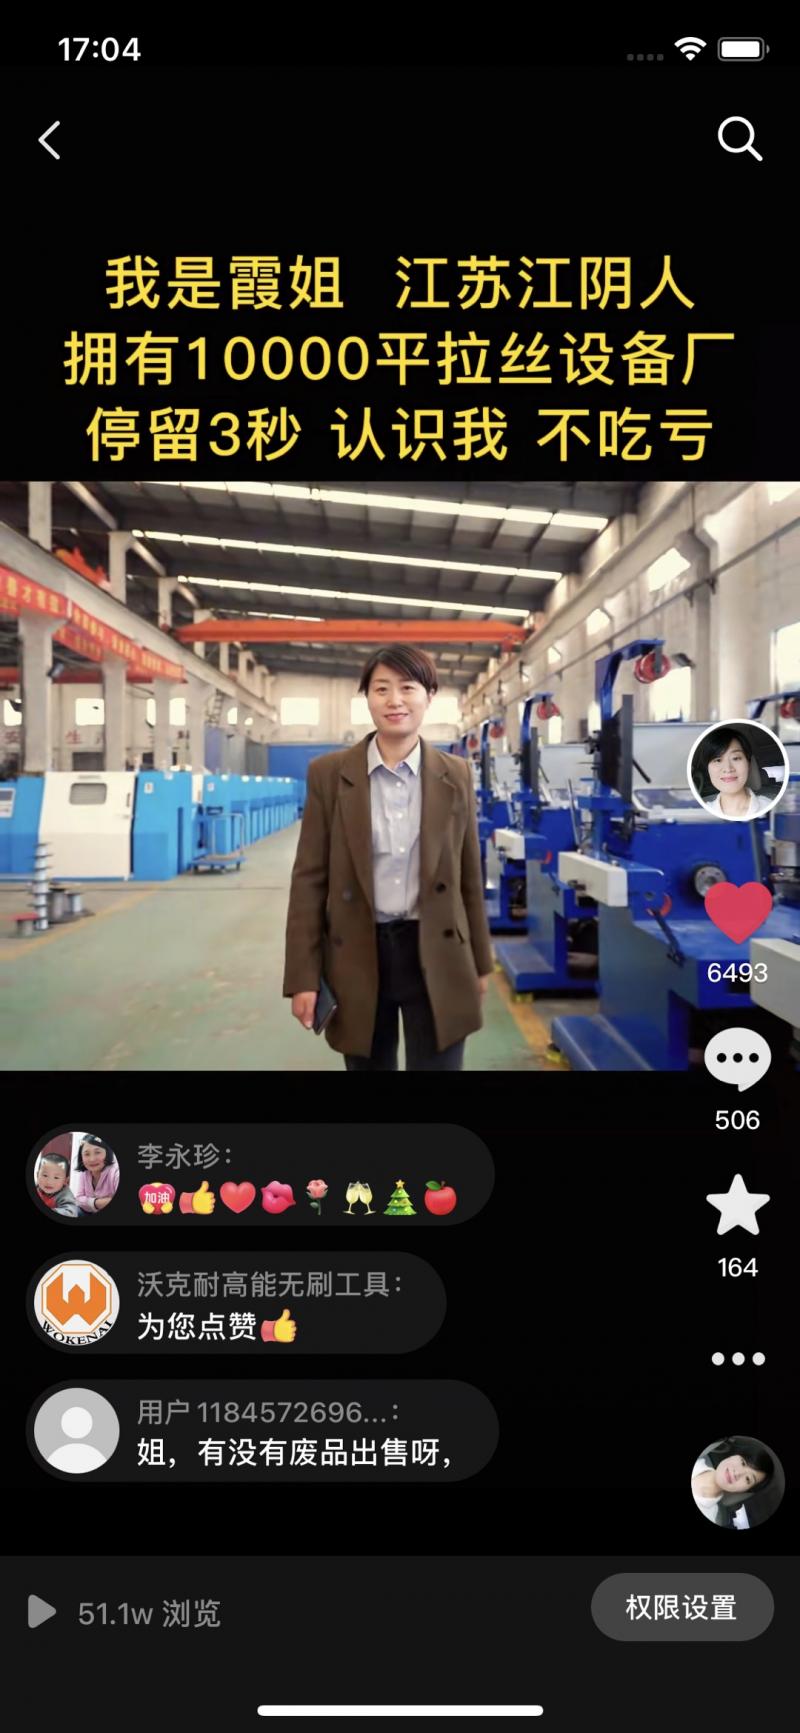 江阴市华硕机械制造有限公司-抖音短视频爆款案例